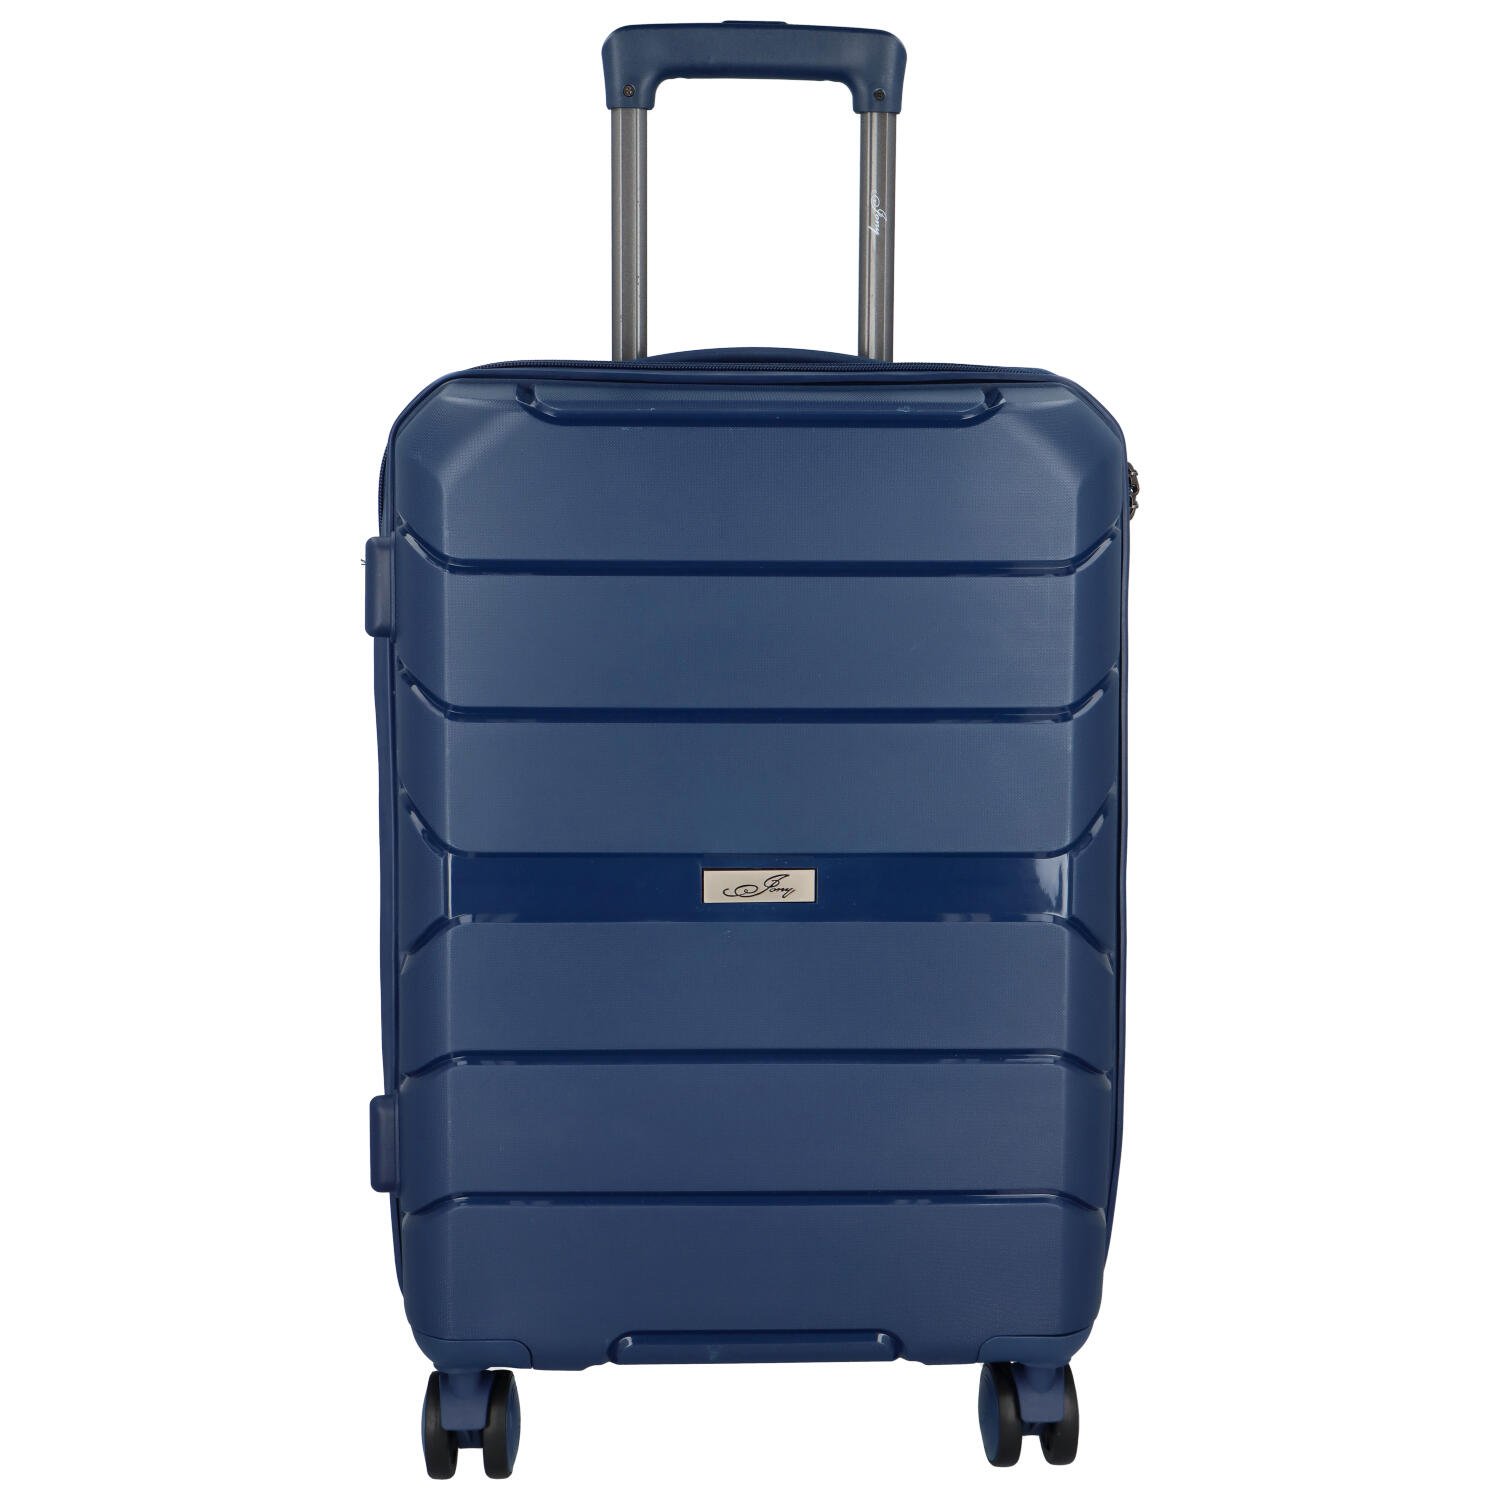 Cestovní plastový kufr Franco velikosti S, modrý